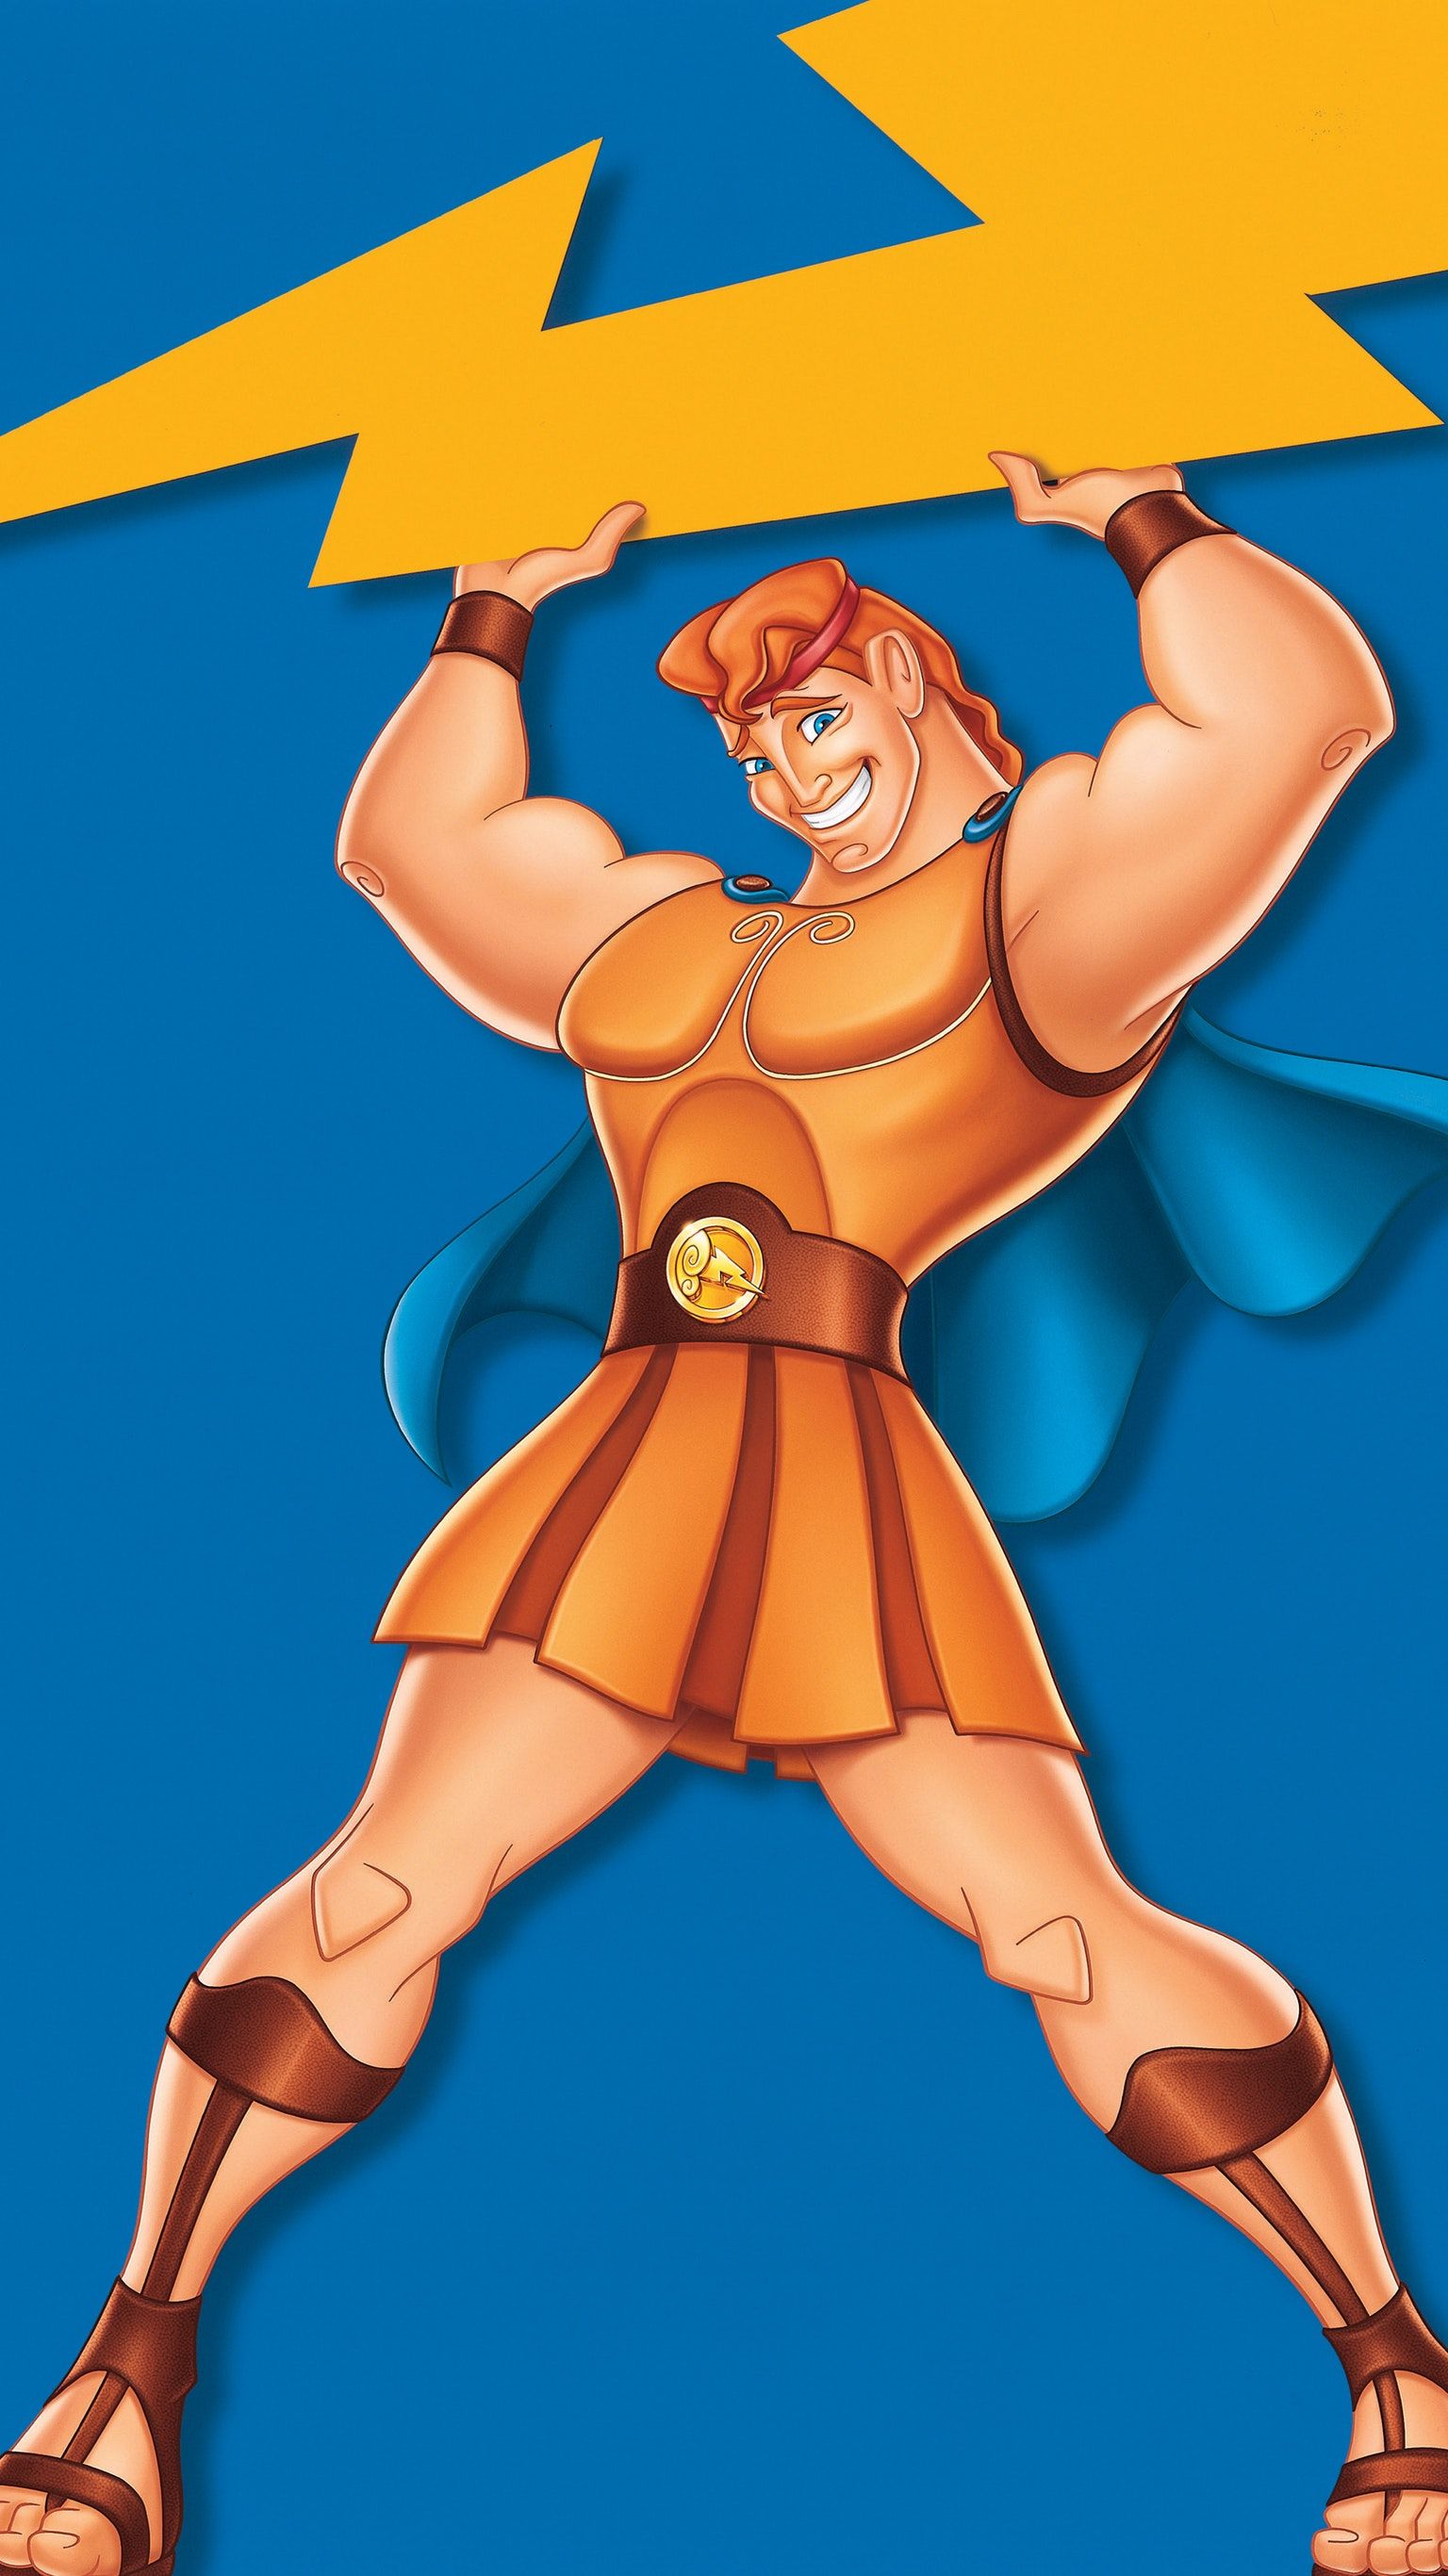 Hercules (1997) Phone Wallpaper. Disney phone background, Hercules cartoon, Old man cartoon